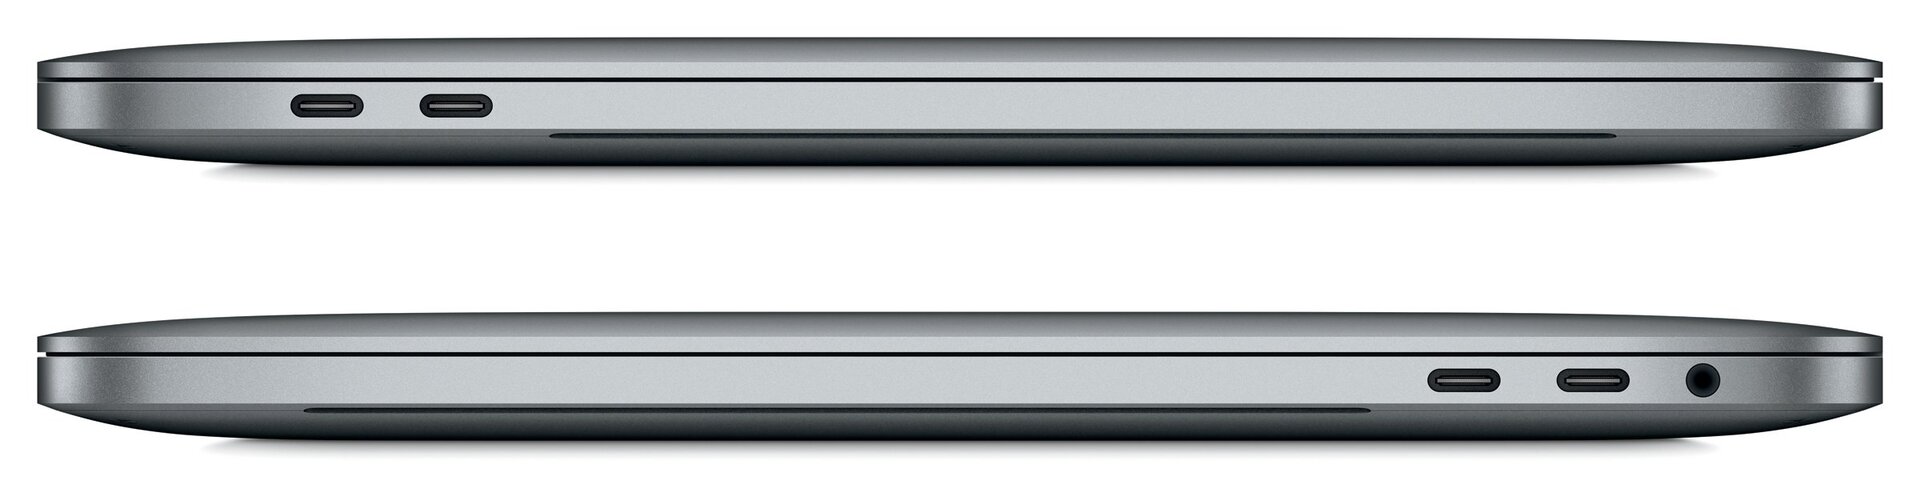 Apple MacBook Pro 13 (2016)